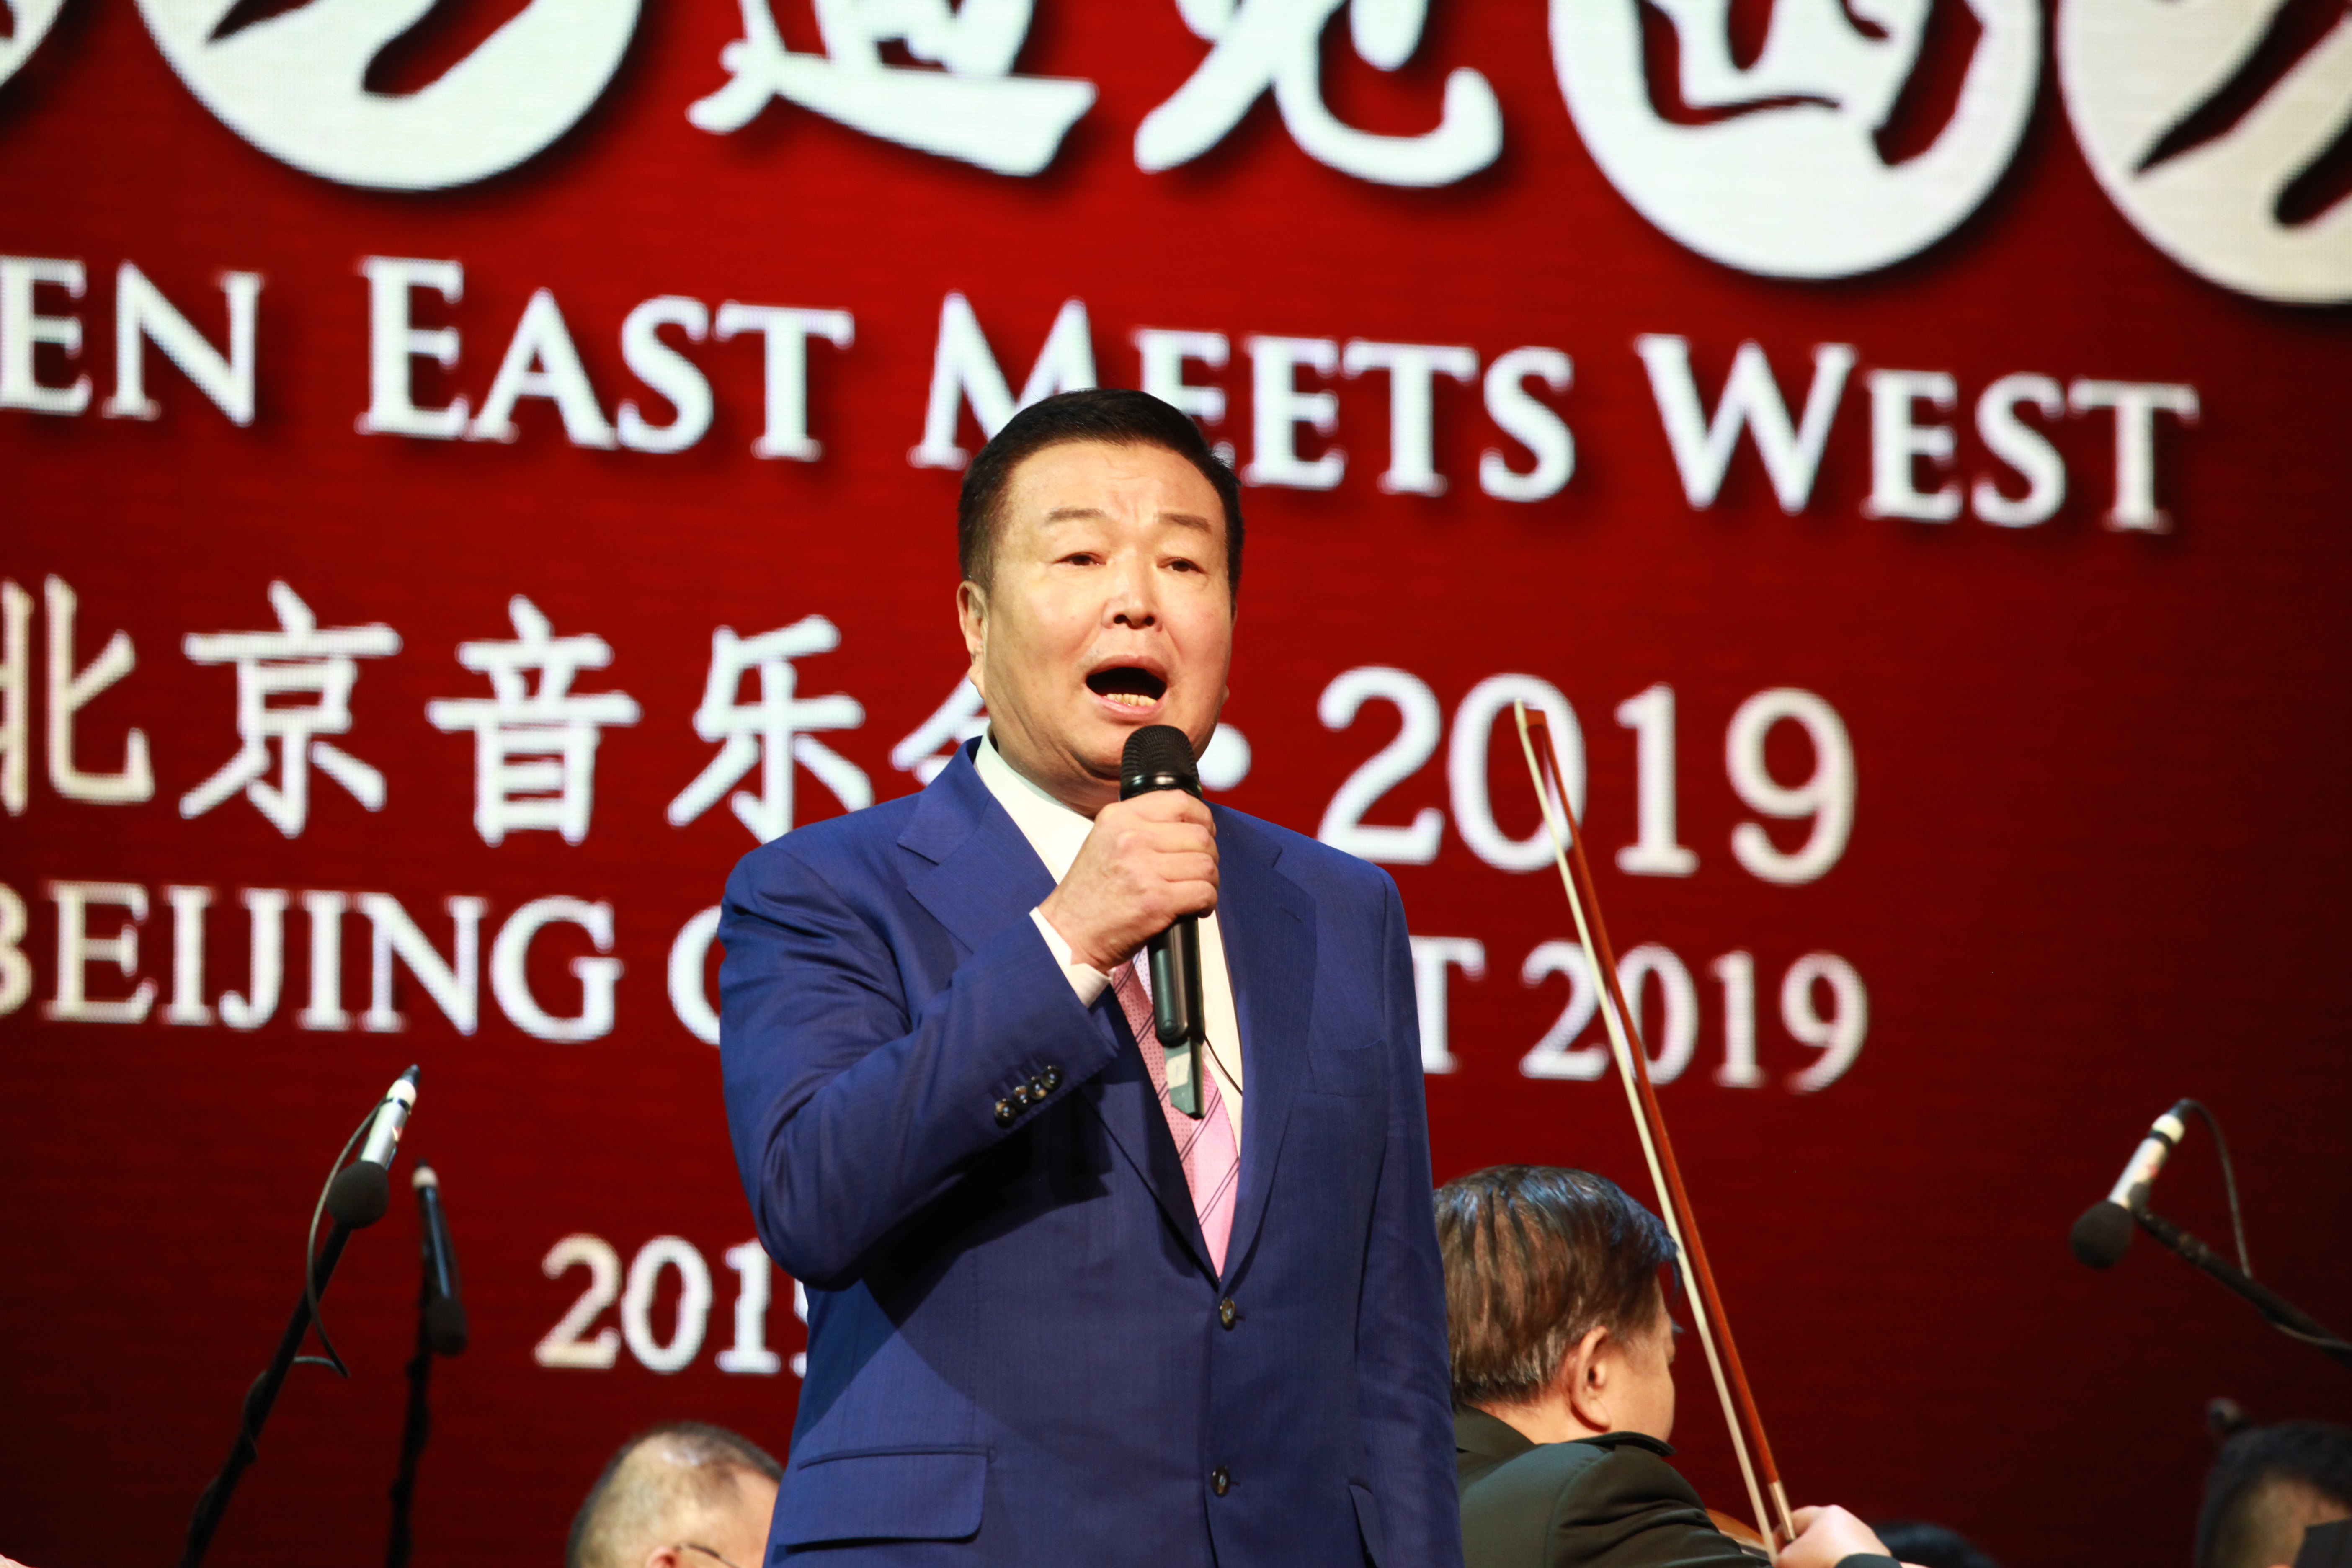 "When East Meets West" 2019 Beijing Concert